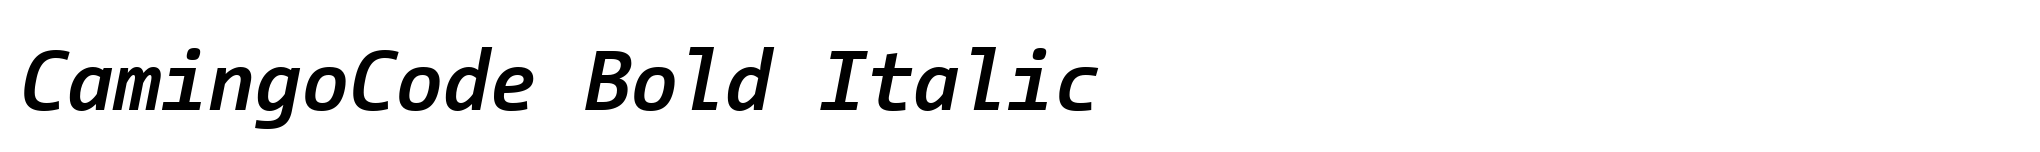 CamingoCode Bold Italic image